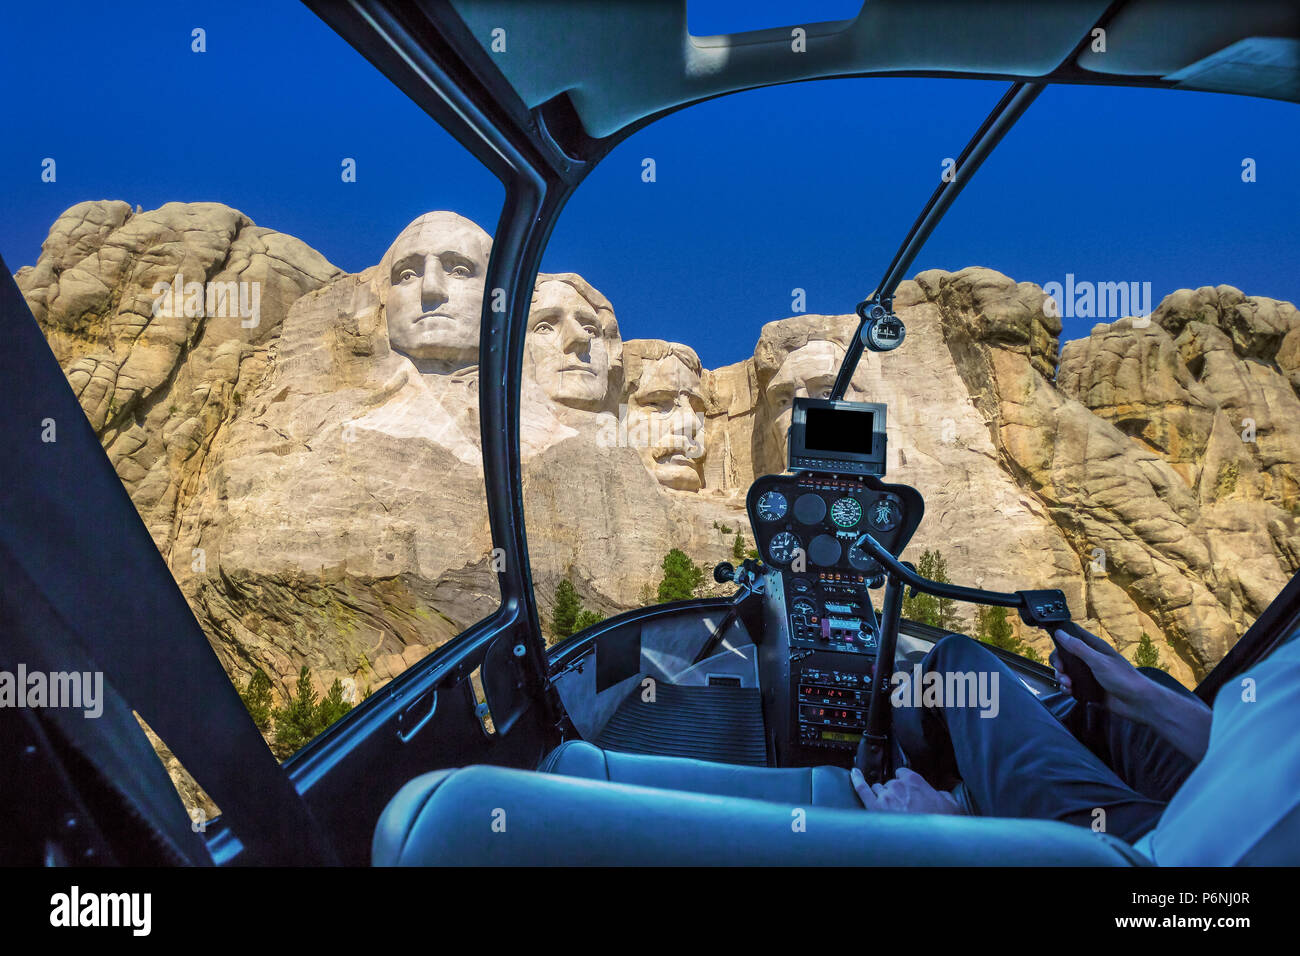 Interni in elicottero volando sul Monte Rushmore National Memorial degli Stati Uniti d'America in Sud Dakota. Noi presidenti storici: Washington Jefferson, Roosevelt, Lincoln. NP volo panoramico. Foto Stock